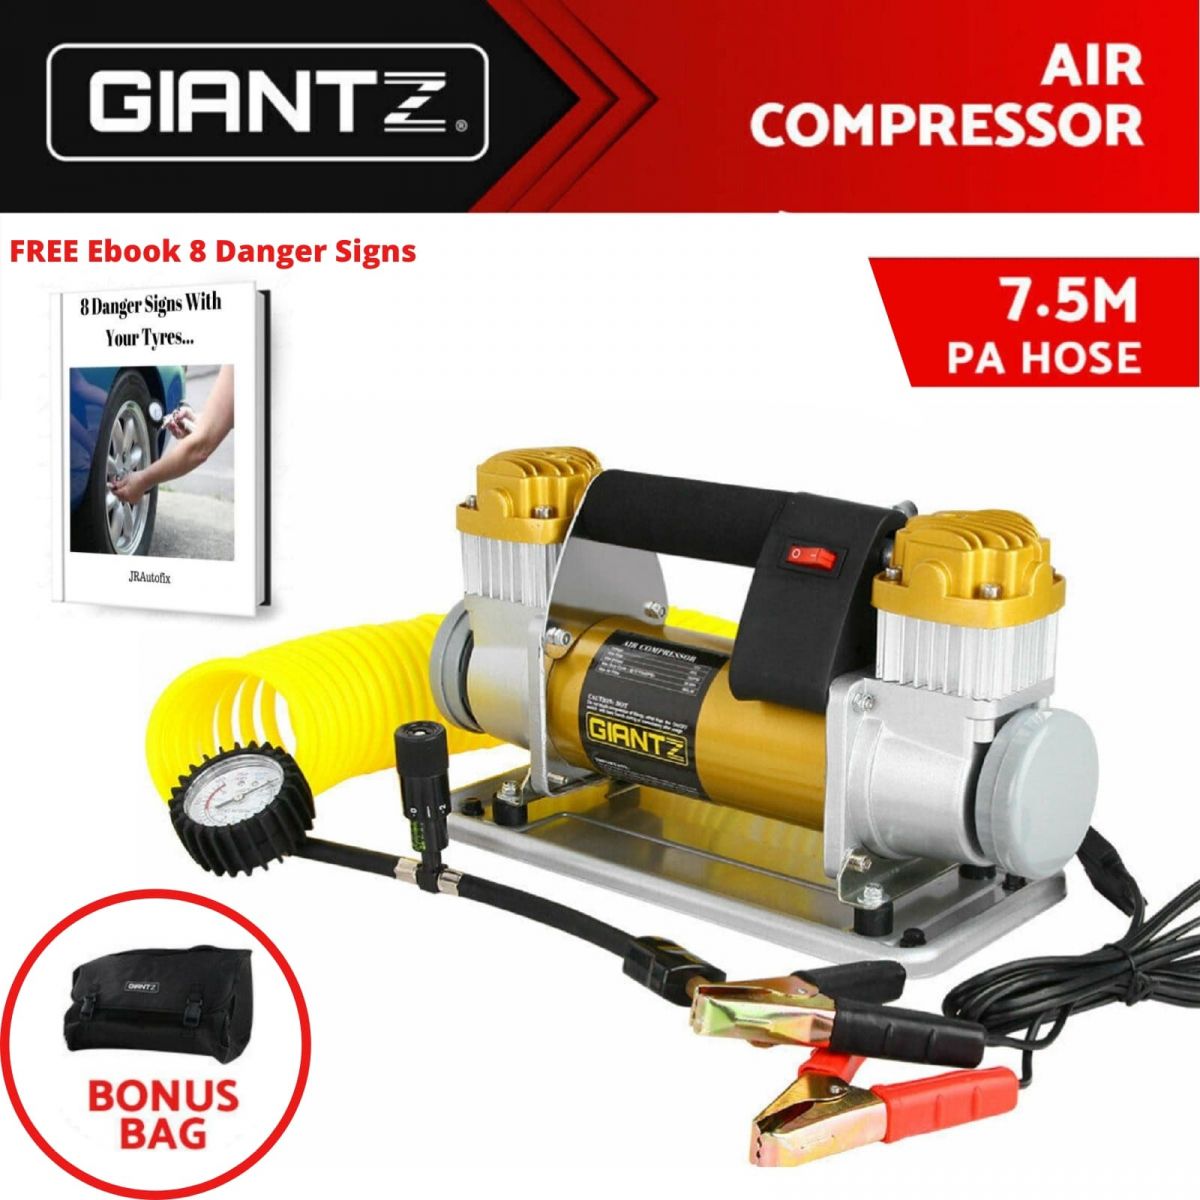 12V Air compressor, portable air compressor, Giantz air compressor